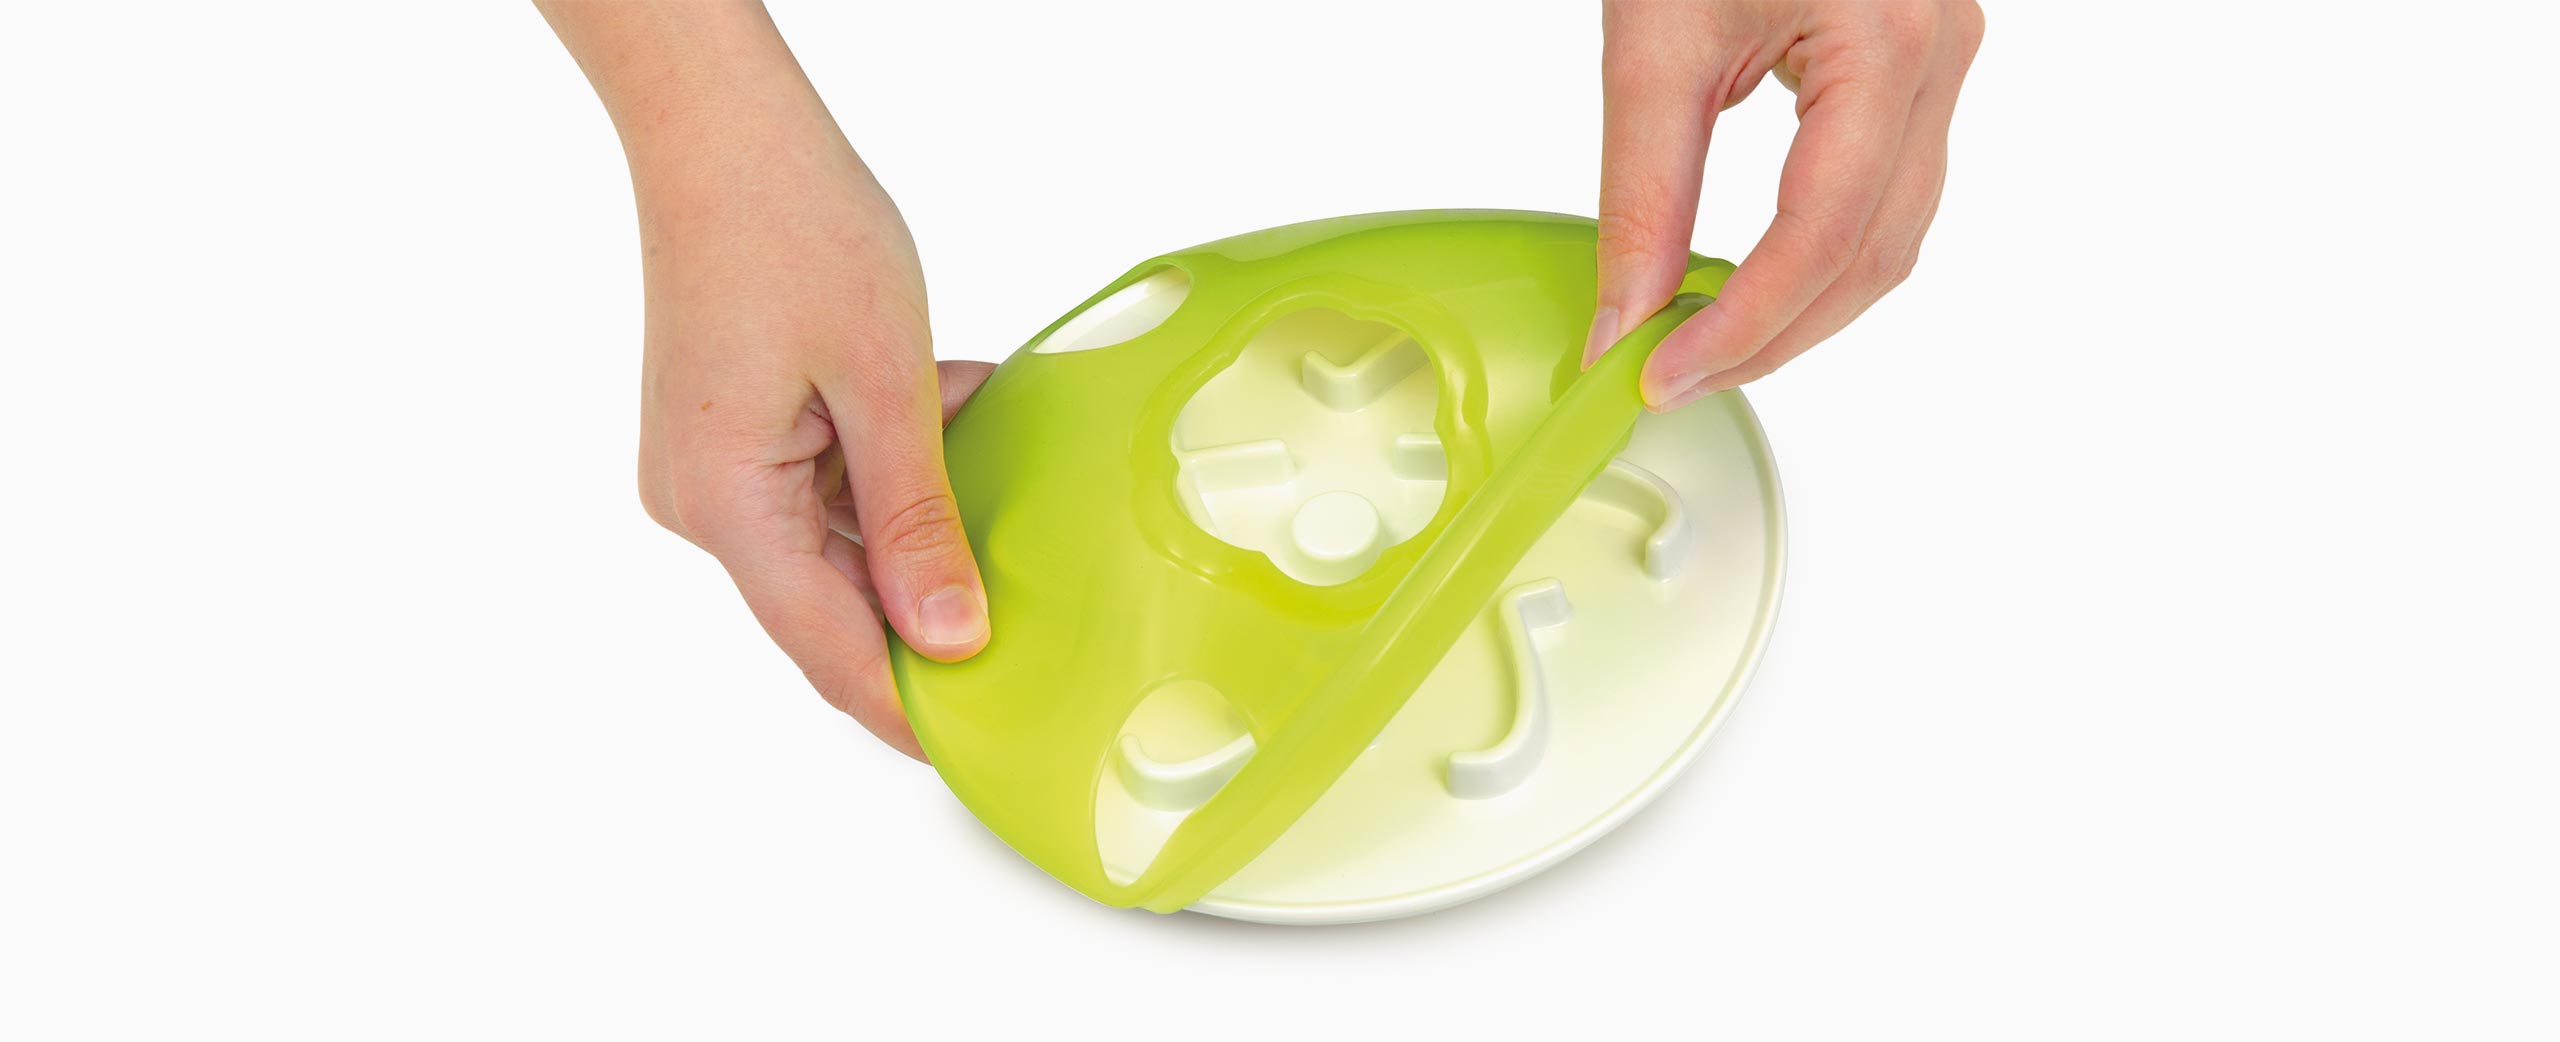 Capa de silicone removível para facilitar a limpeza na maquina de lavar louça